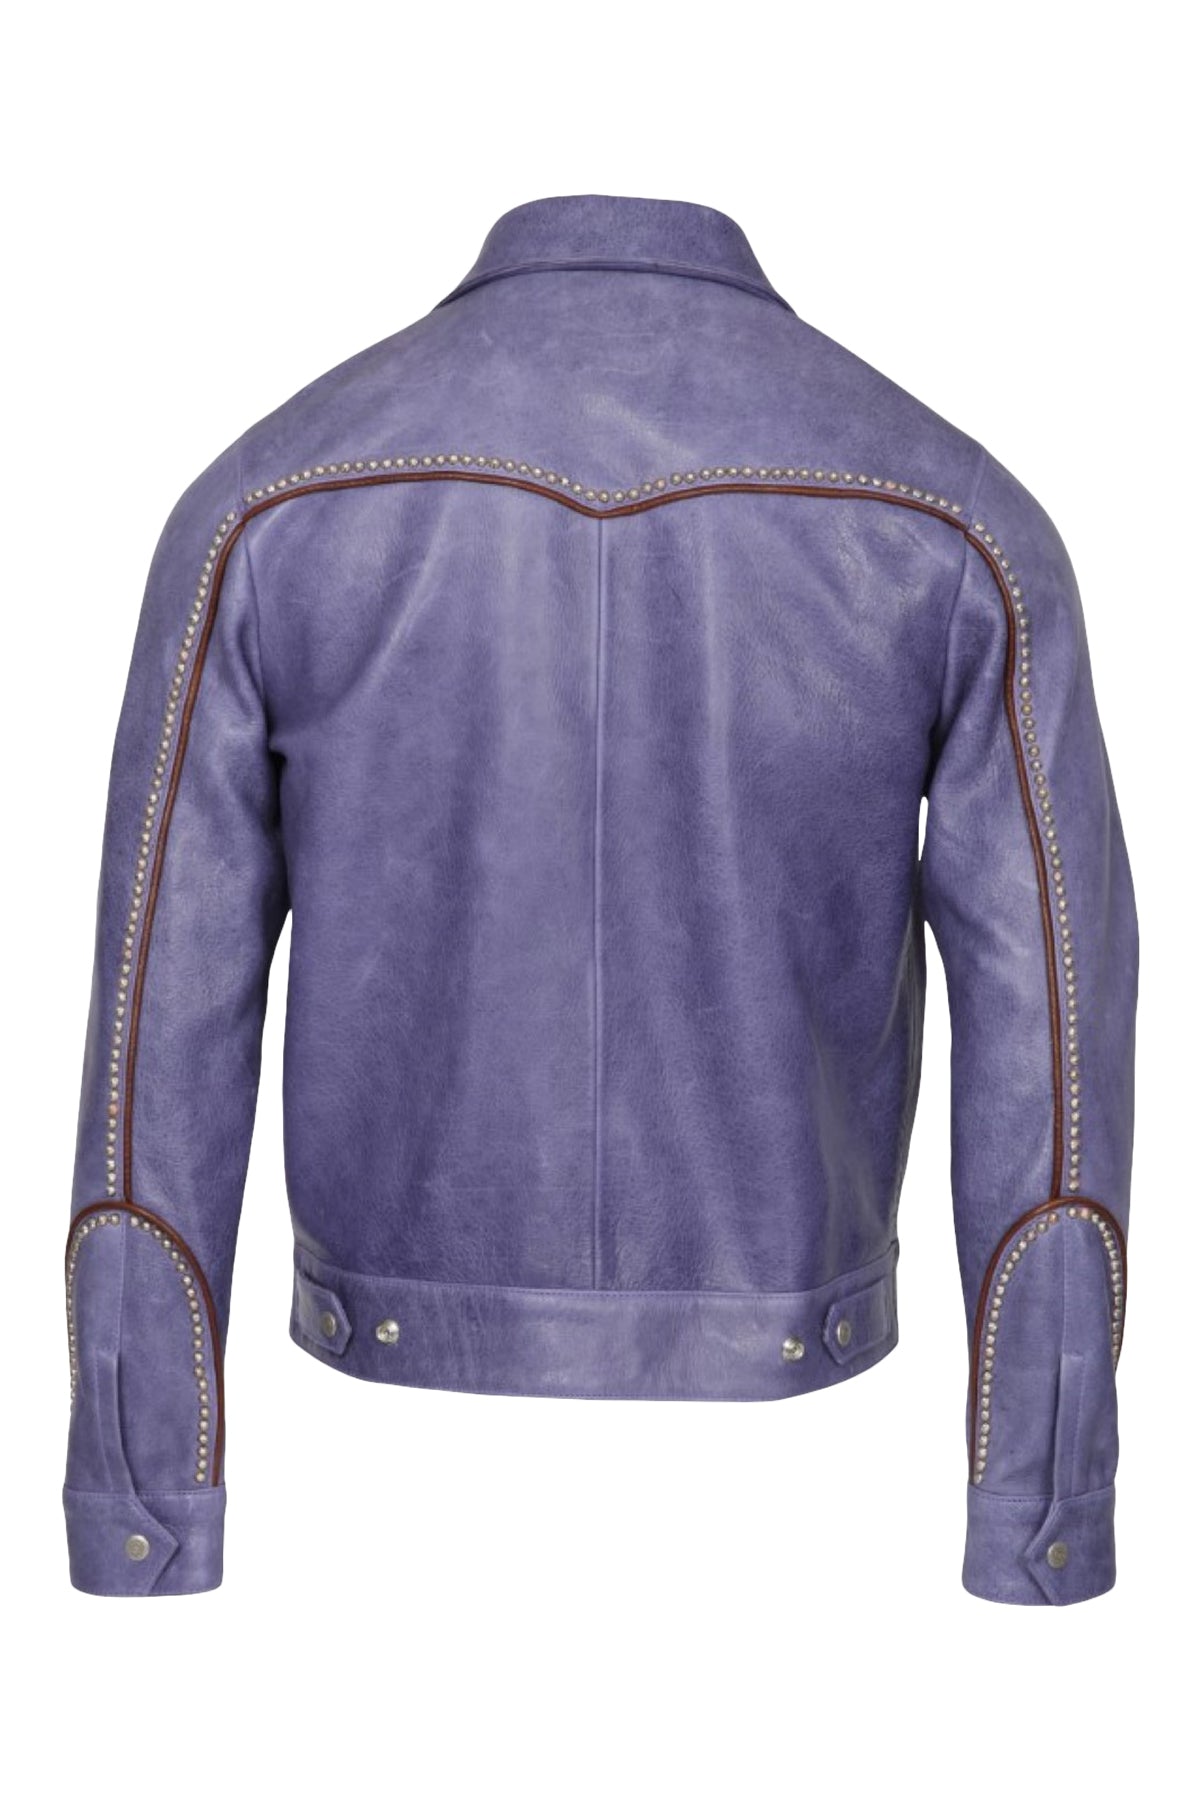 Bruce/Embellished Leather Western Jacket